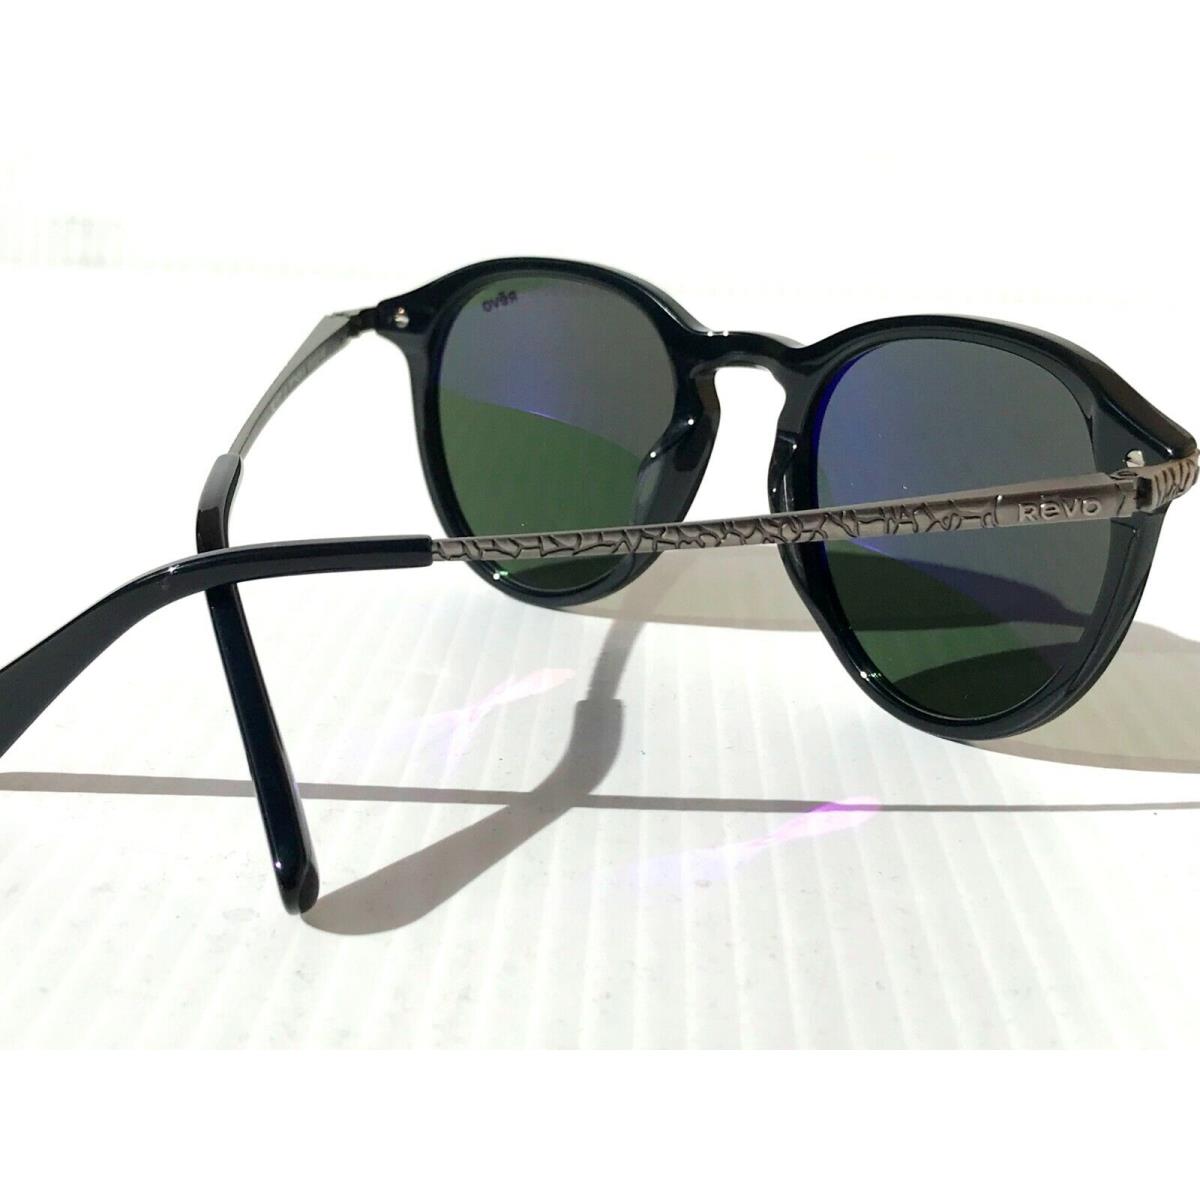 Revo sunglasses PYTHON - Black Frame, Gray Lens 8